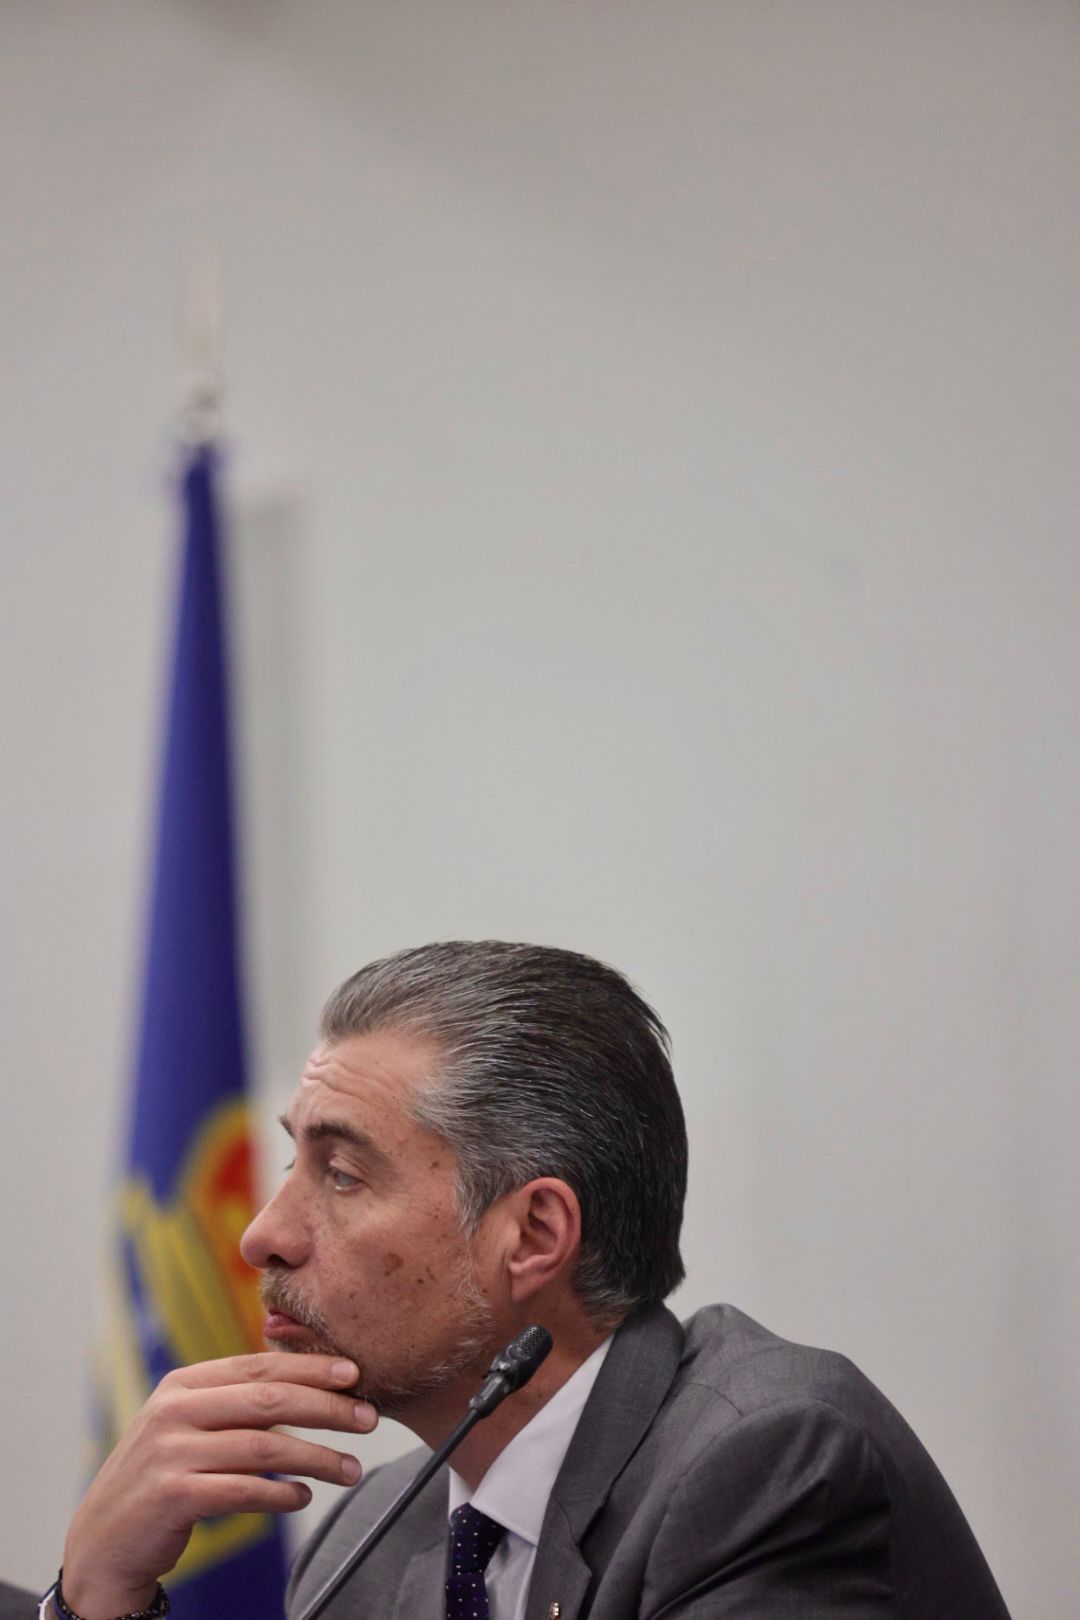 EN IMÁGENES: Pachuca aprueba la reforma del consejo del Oviedo por unanimidad